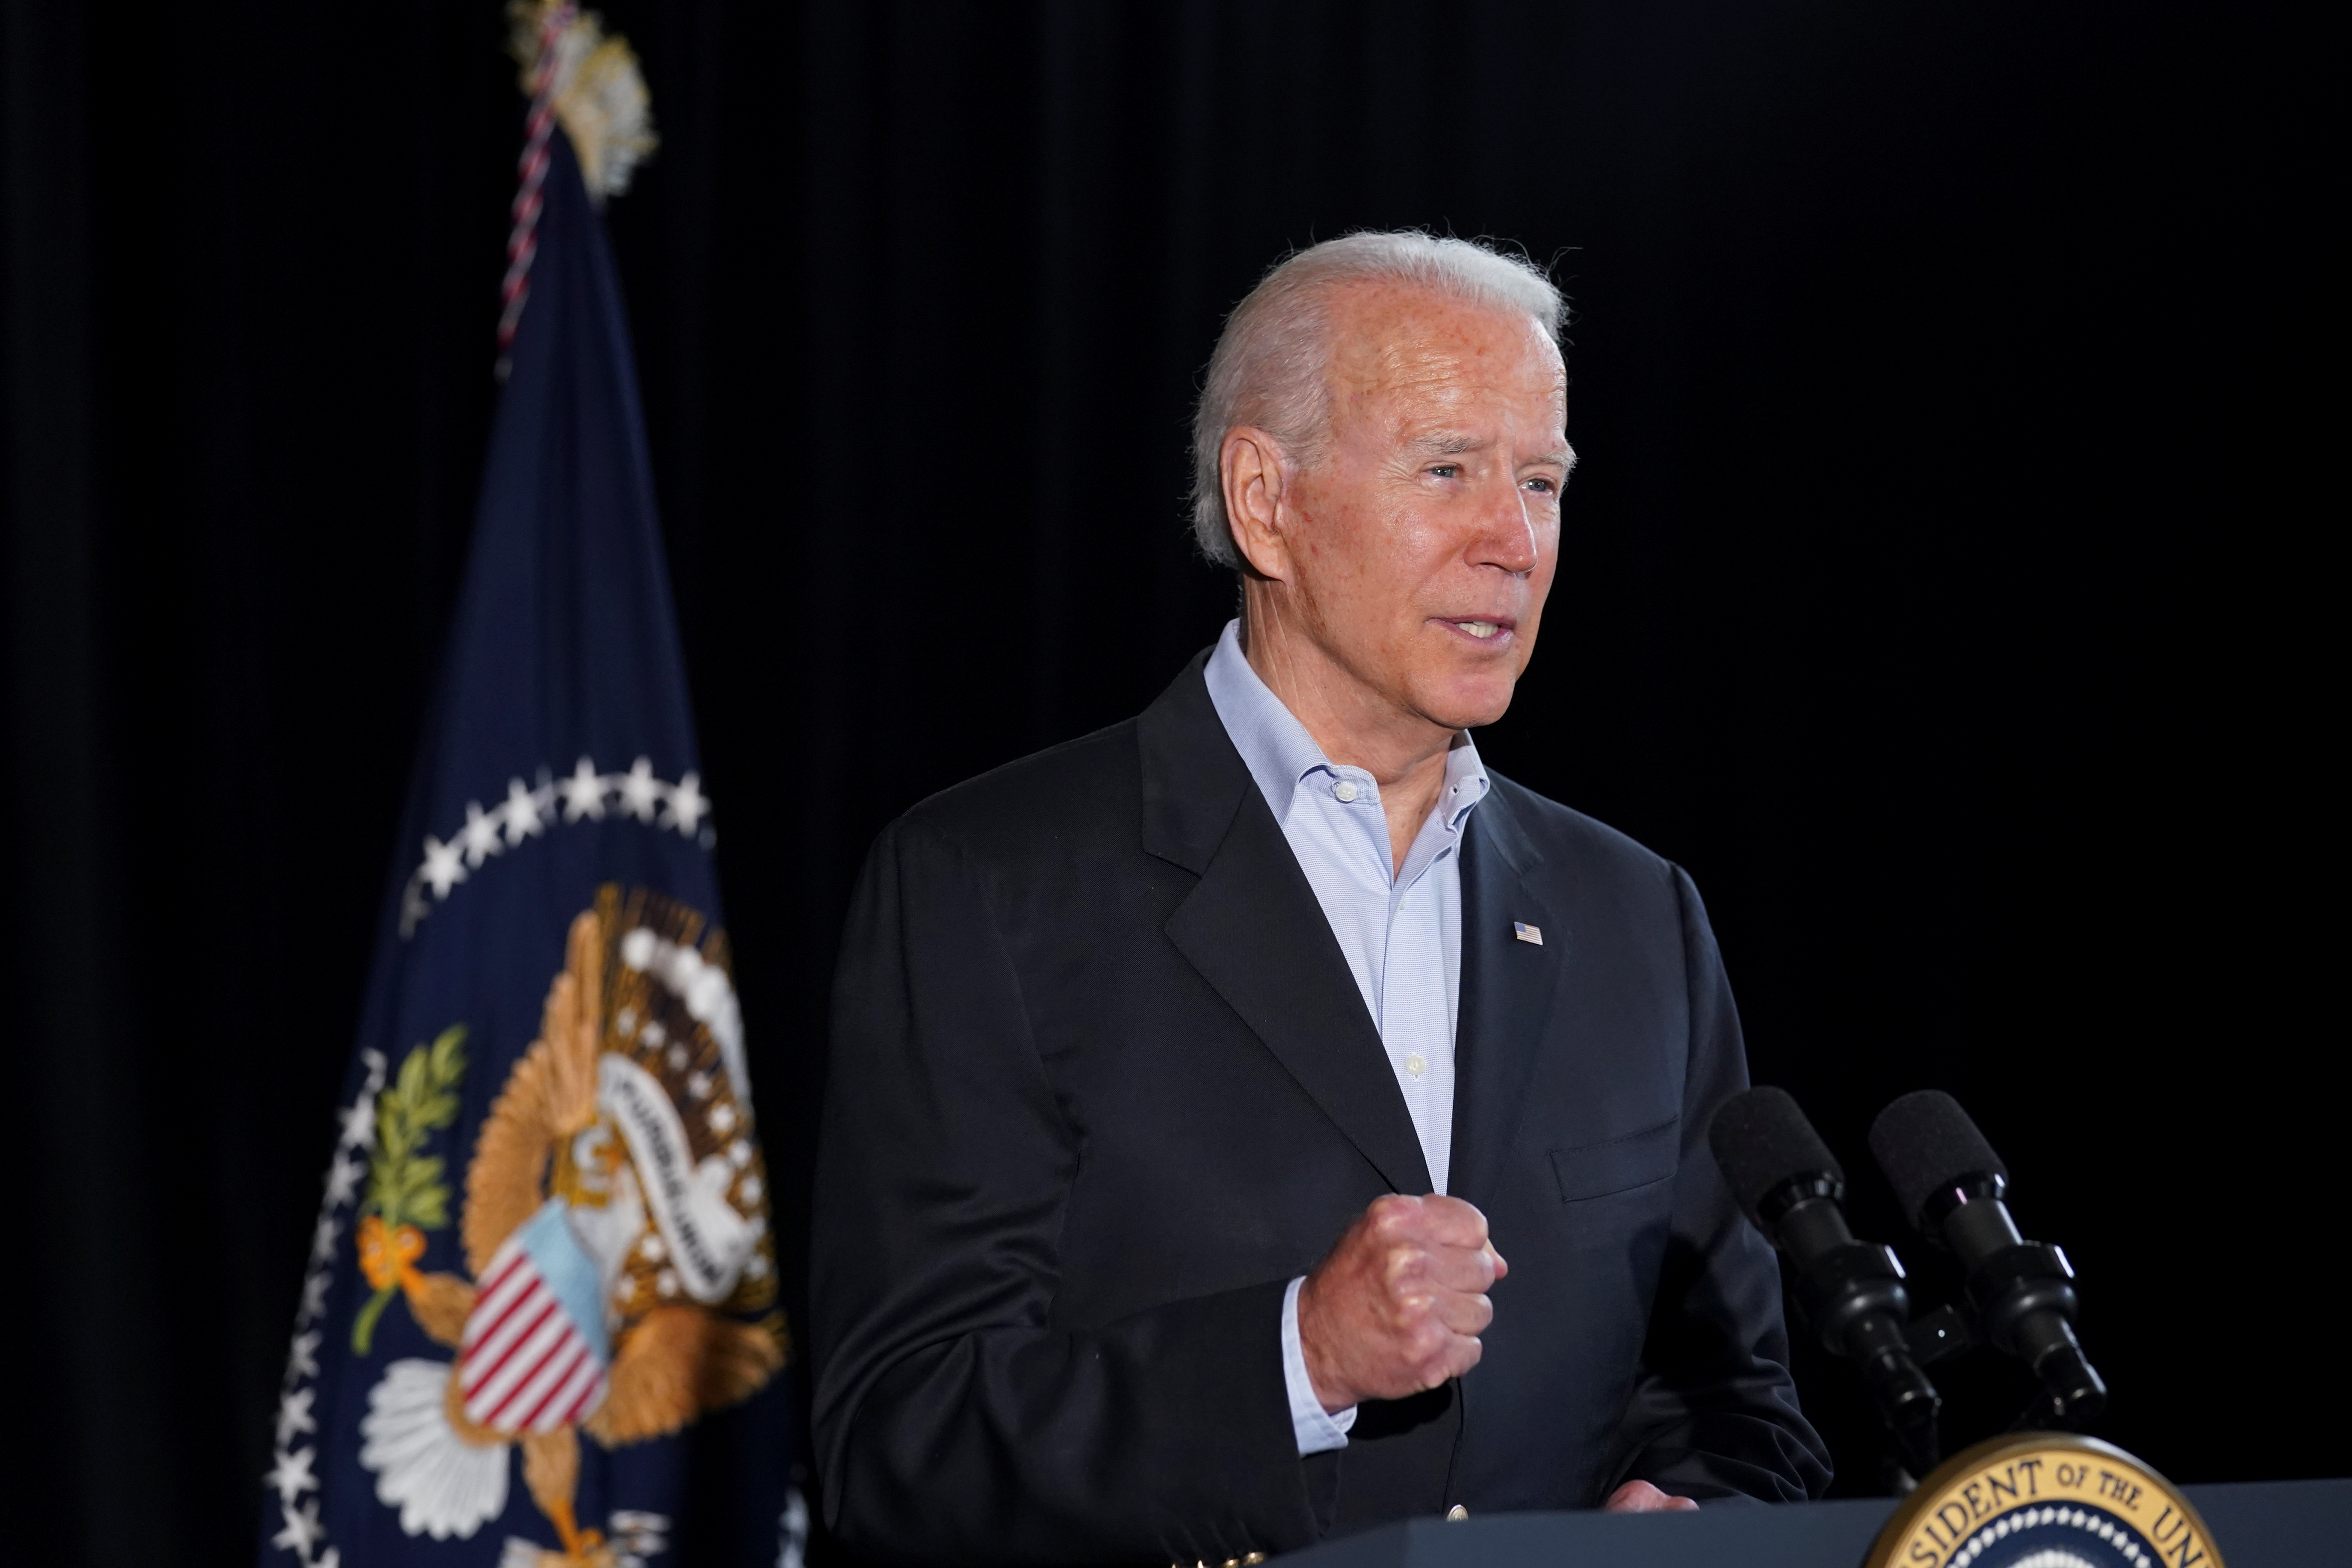 Joe Biden busca que el Congreso apruebe su ambicioso proyecto de infraestructura (Foto: REUTERS)